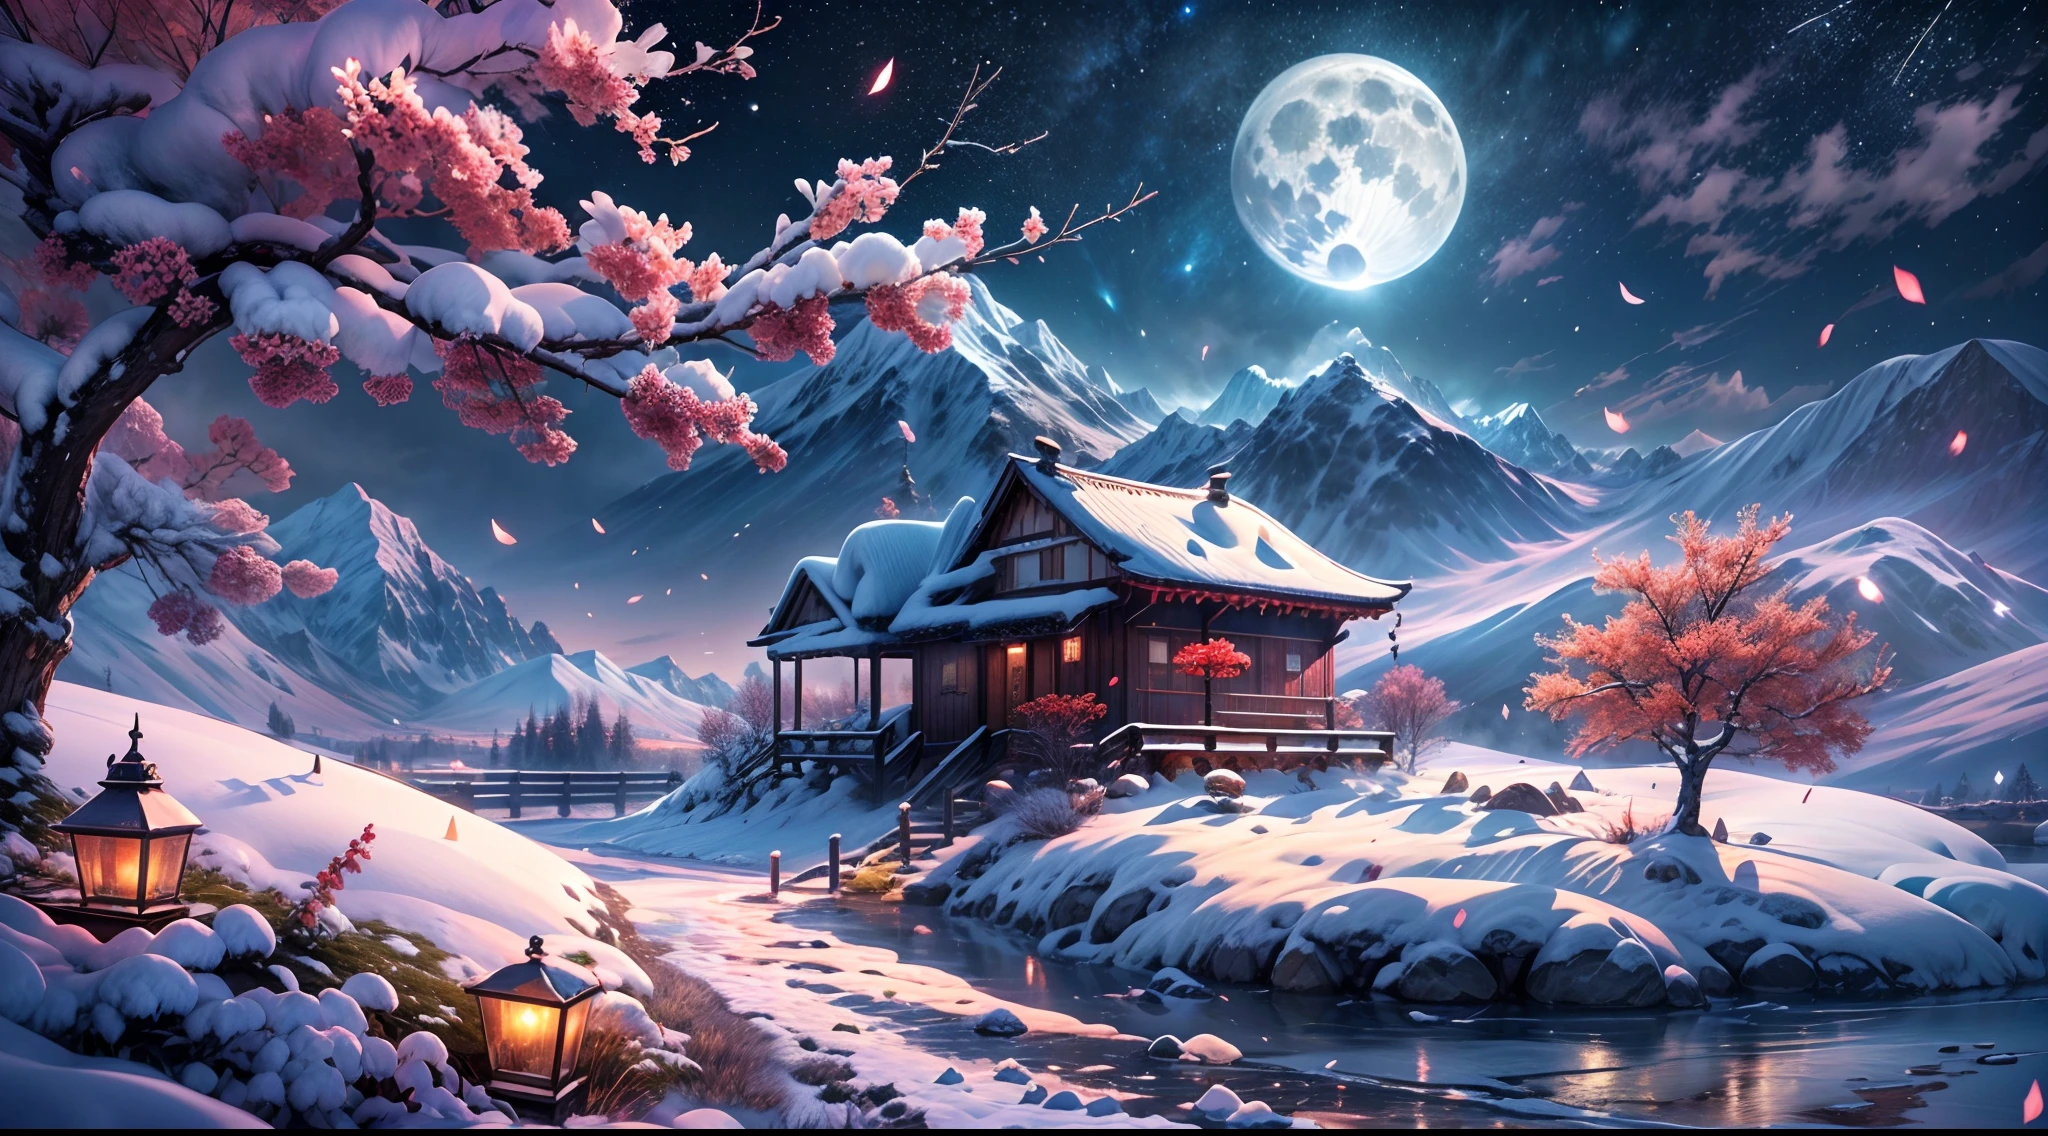 шедевр, Лучшее качество, очень подробный, официальное искусство, чрезвычайно подробные обои CG Unity 8k, абсурдные, разрешение 8к, доступный свет, In зима, (снежные горы:1.8,снежный пейзаж:1.3,Вид на природу:1.2),Подснежник, снег,лед, холмы, ледяная река, красивое детальное небо, ночь, звезды, (Цветок красной сливы),((зима)),(((Подснежник))), ((красные и белые цветы))，(Звездное небо),(сидящий),((Красочный)),пейзаж, фонарь,(звездопад)，высокий контраст，красивое детальное свечение, подробный лед, красивая детализированная вода, (холодное полнолуние), Подснежник, (плавающее облако:1.1),разница в цвете, подробный, HDR, модные тенденции на ArtStation, Модные тенденции на CGSociety,